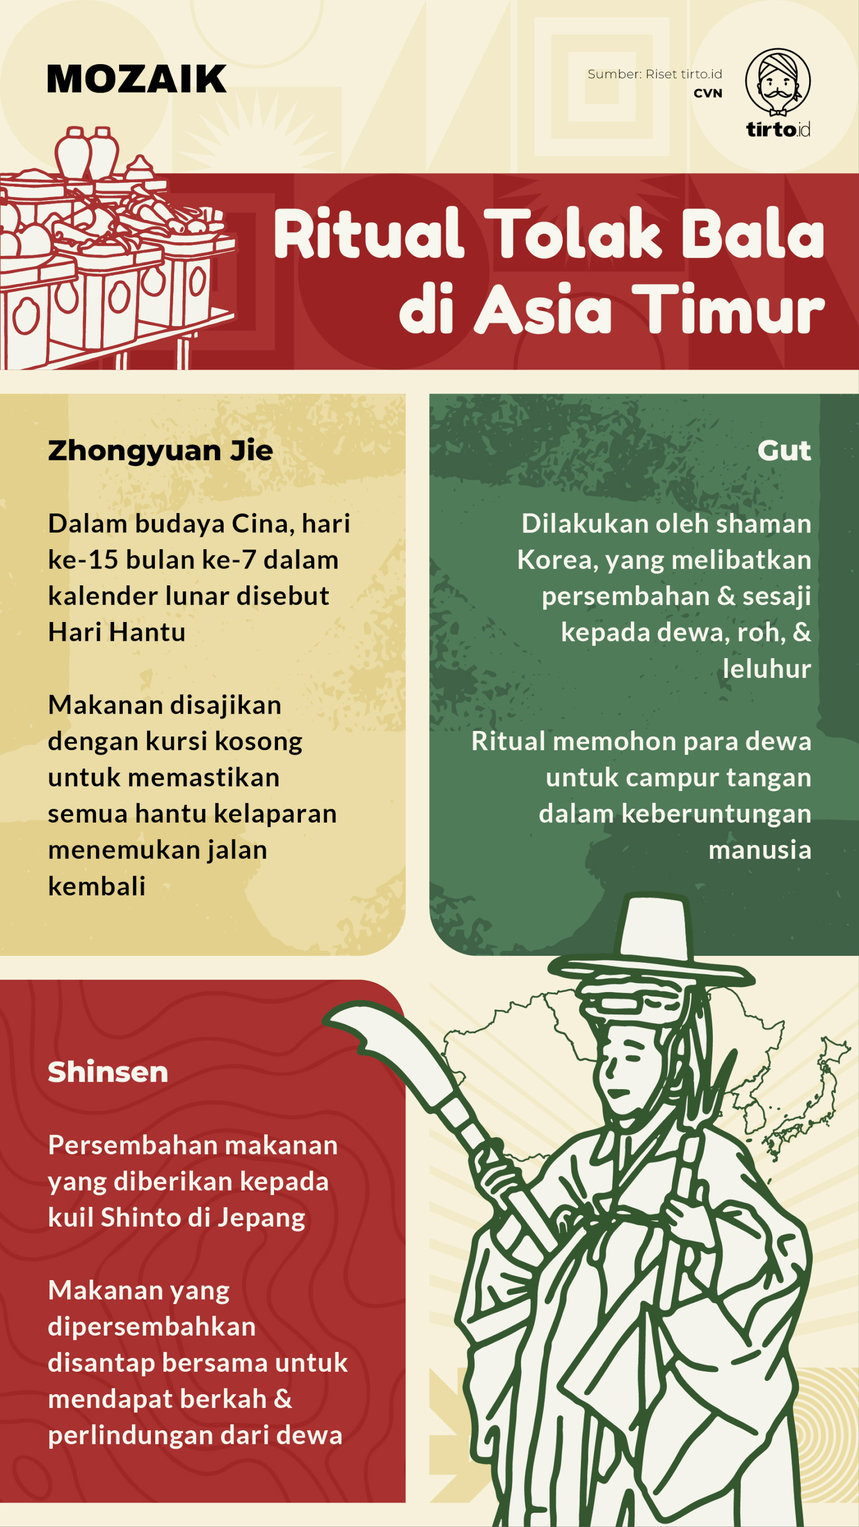 Infografik Mozaik Ritual Tolak Bala di Asia Timur